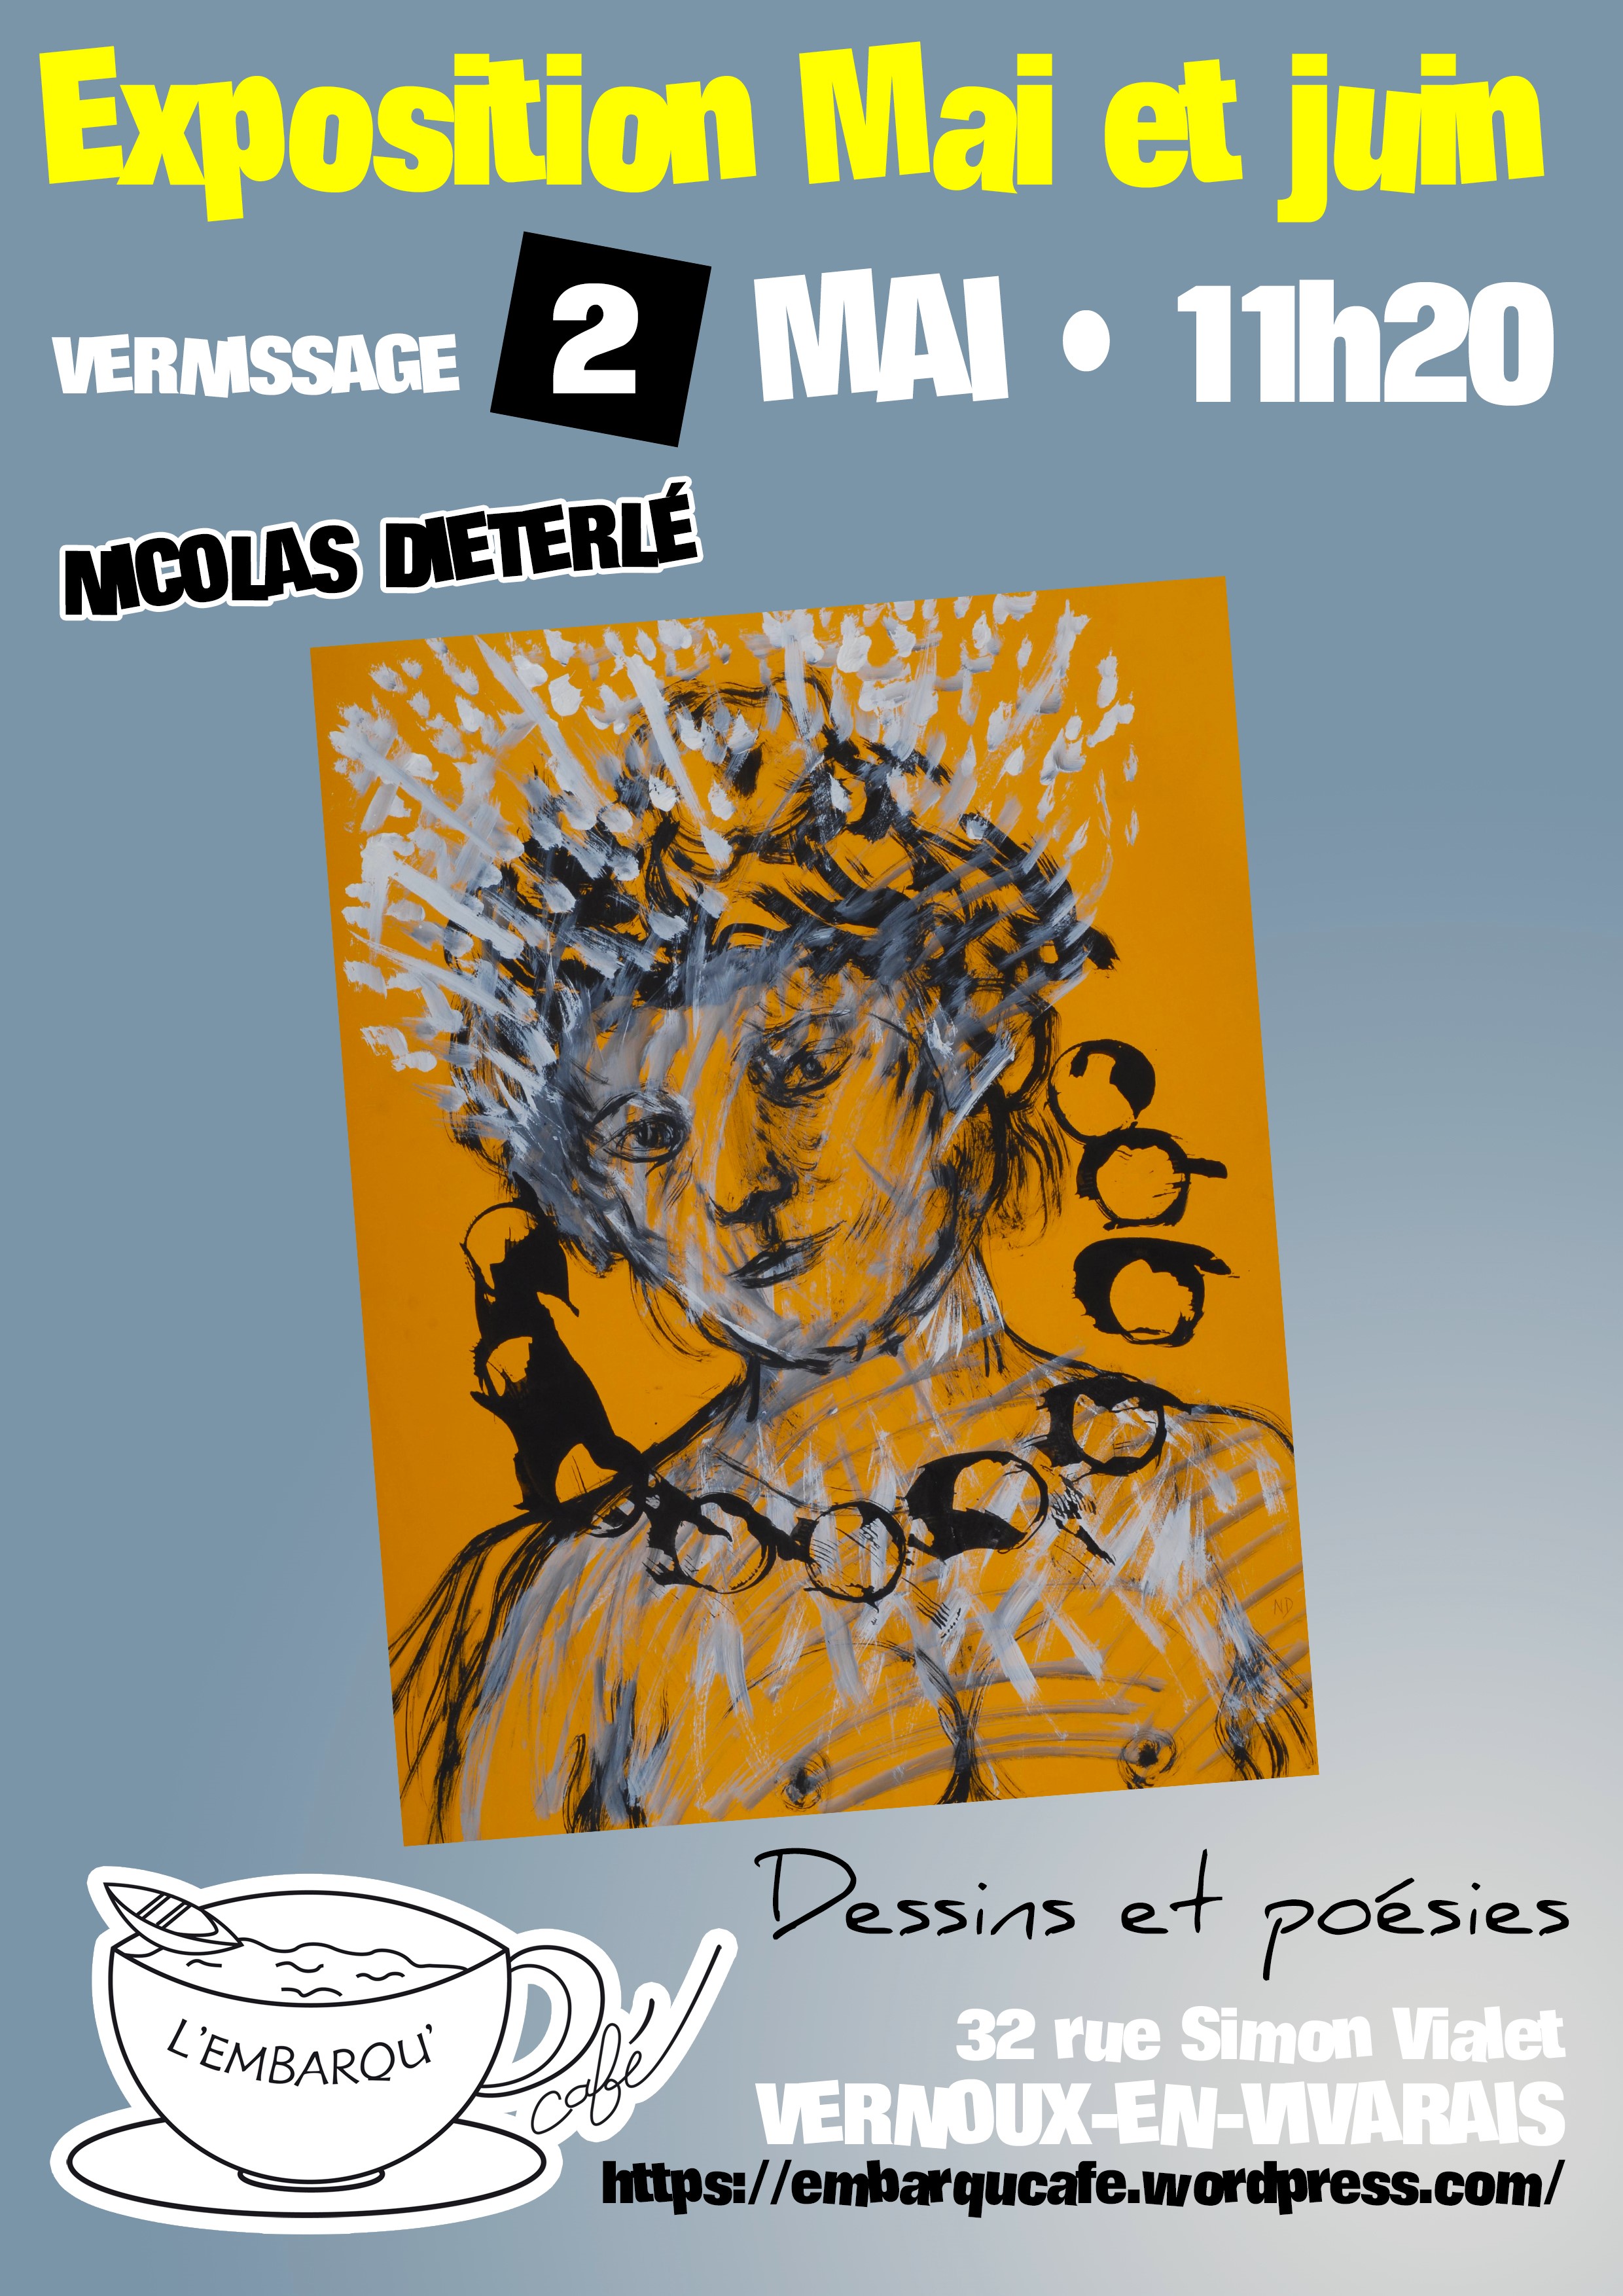 Alle leuke evenementen! : Vernissage de l'exposition de dessins et poésies de Nicolas Dieterlé